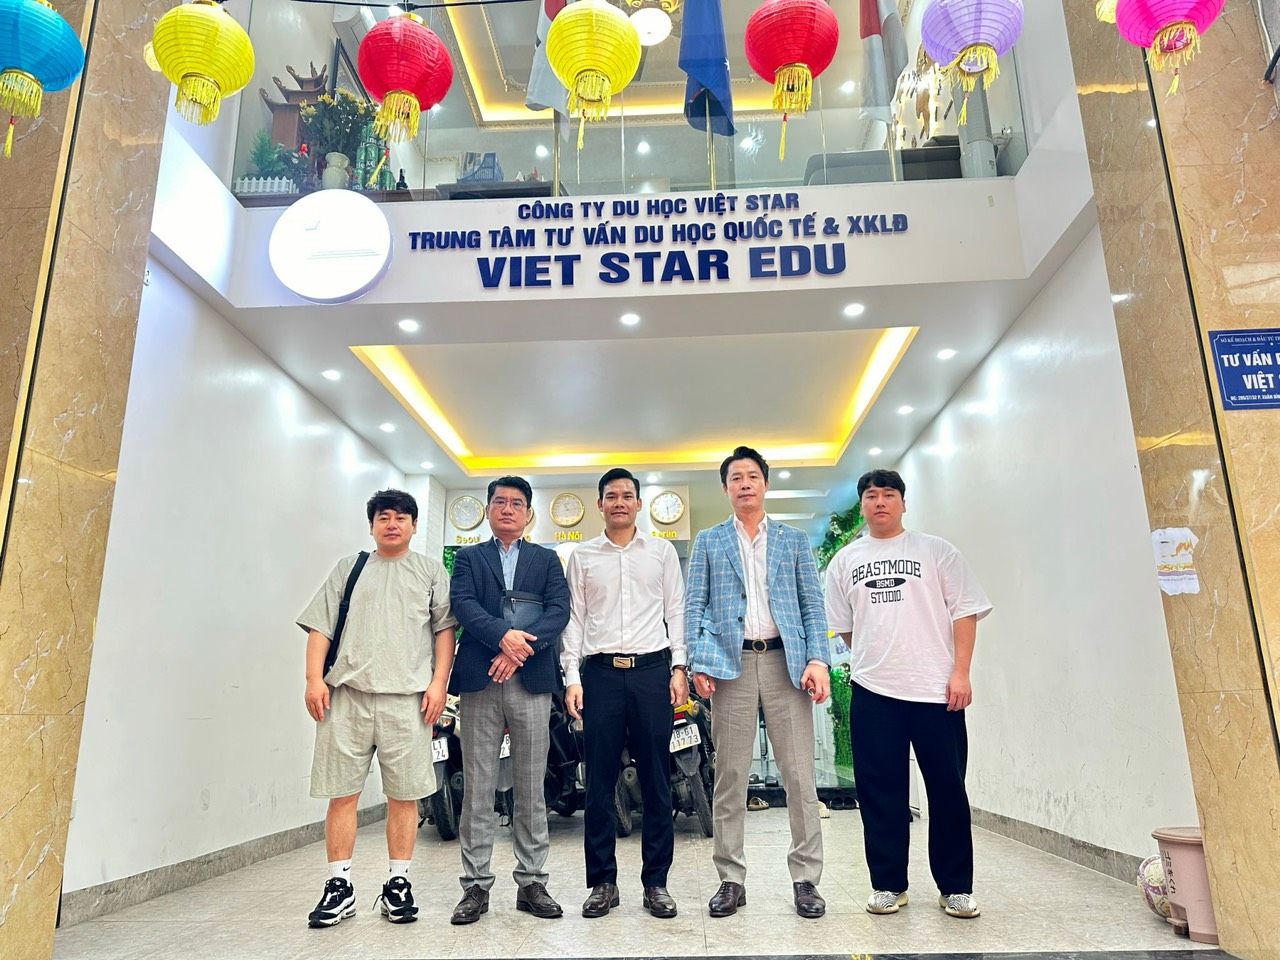 Trường cao đẳng Koguryeo đến phỏng vấn học sinh tại trung tâm Việt Star